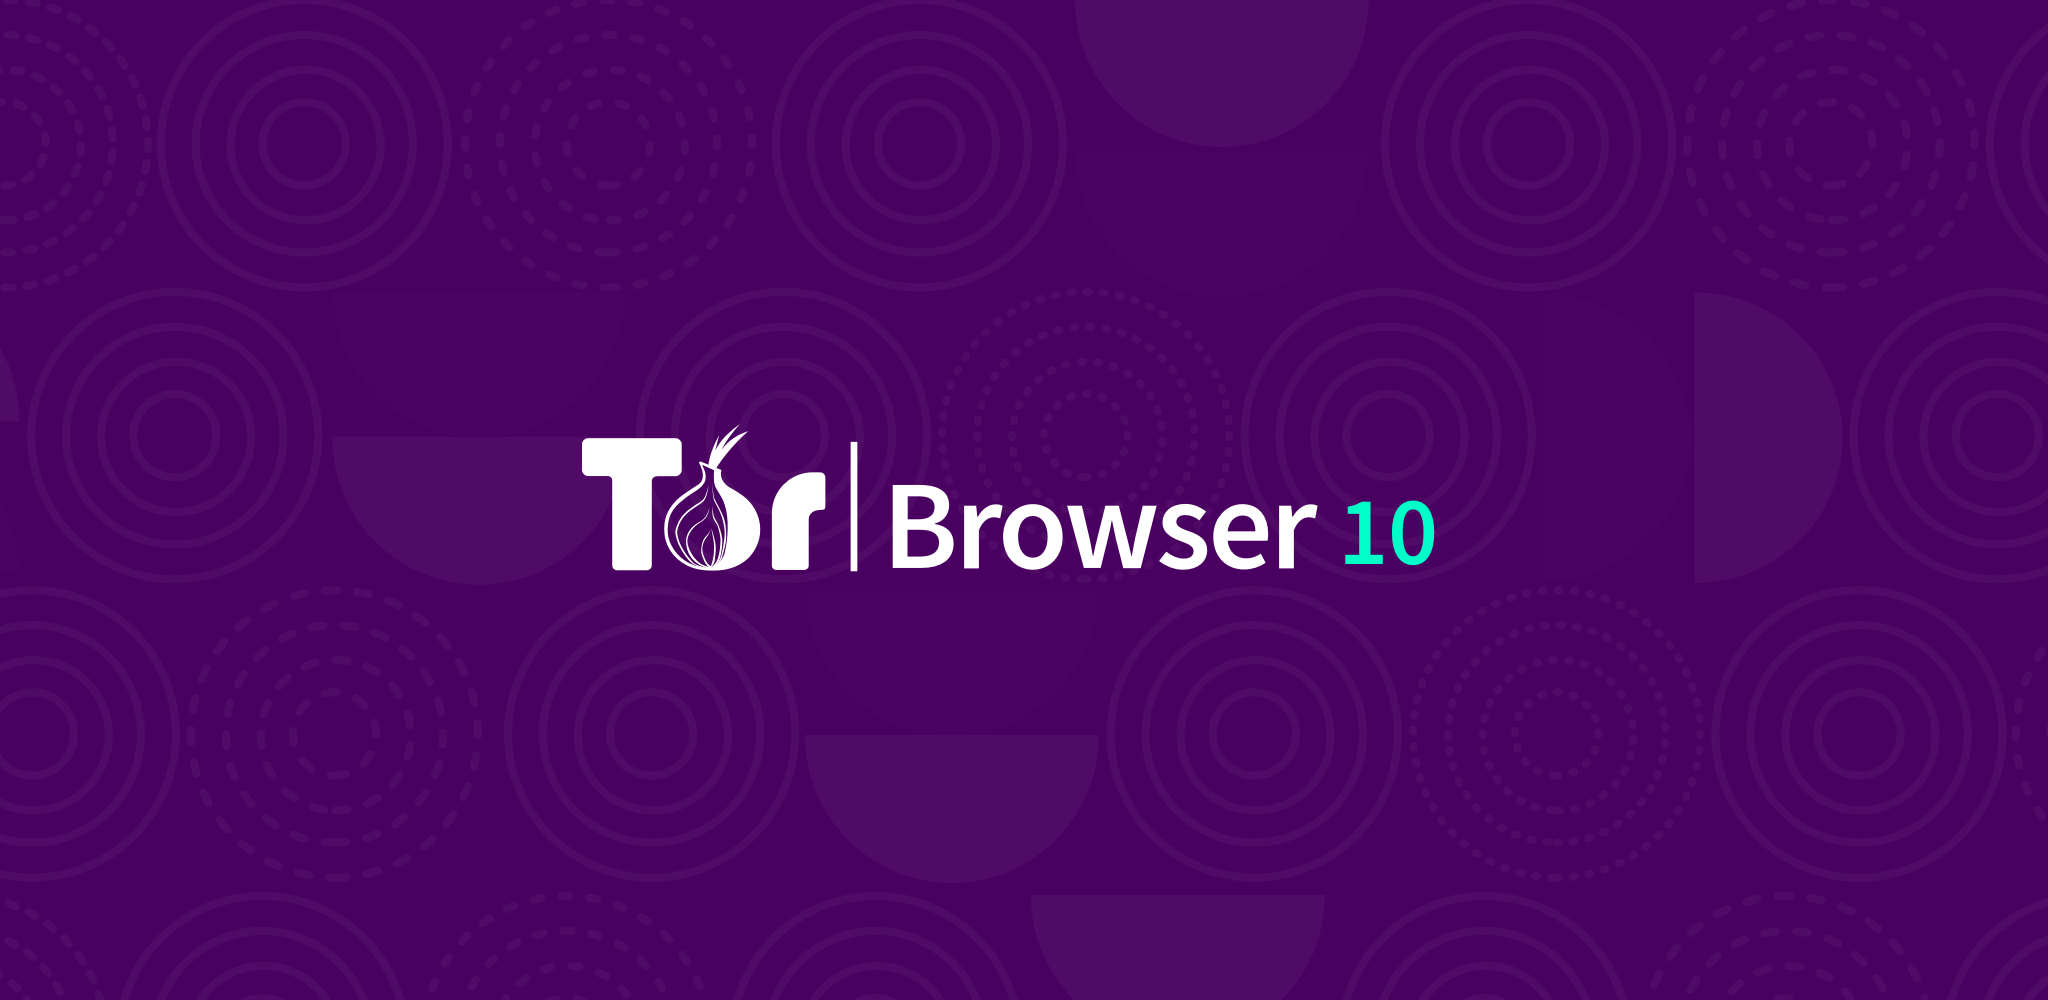 Tor browser download free windows mega browser tor freebsd mega вход